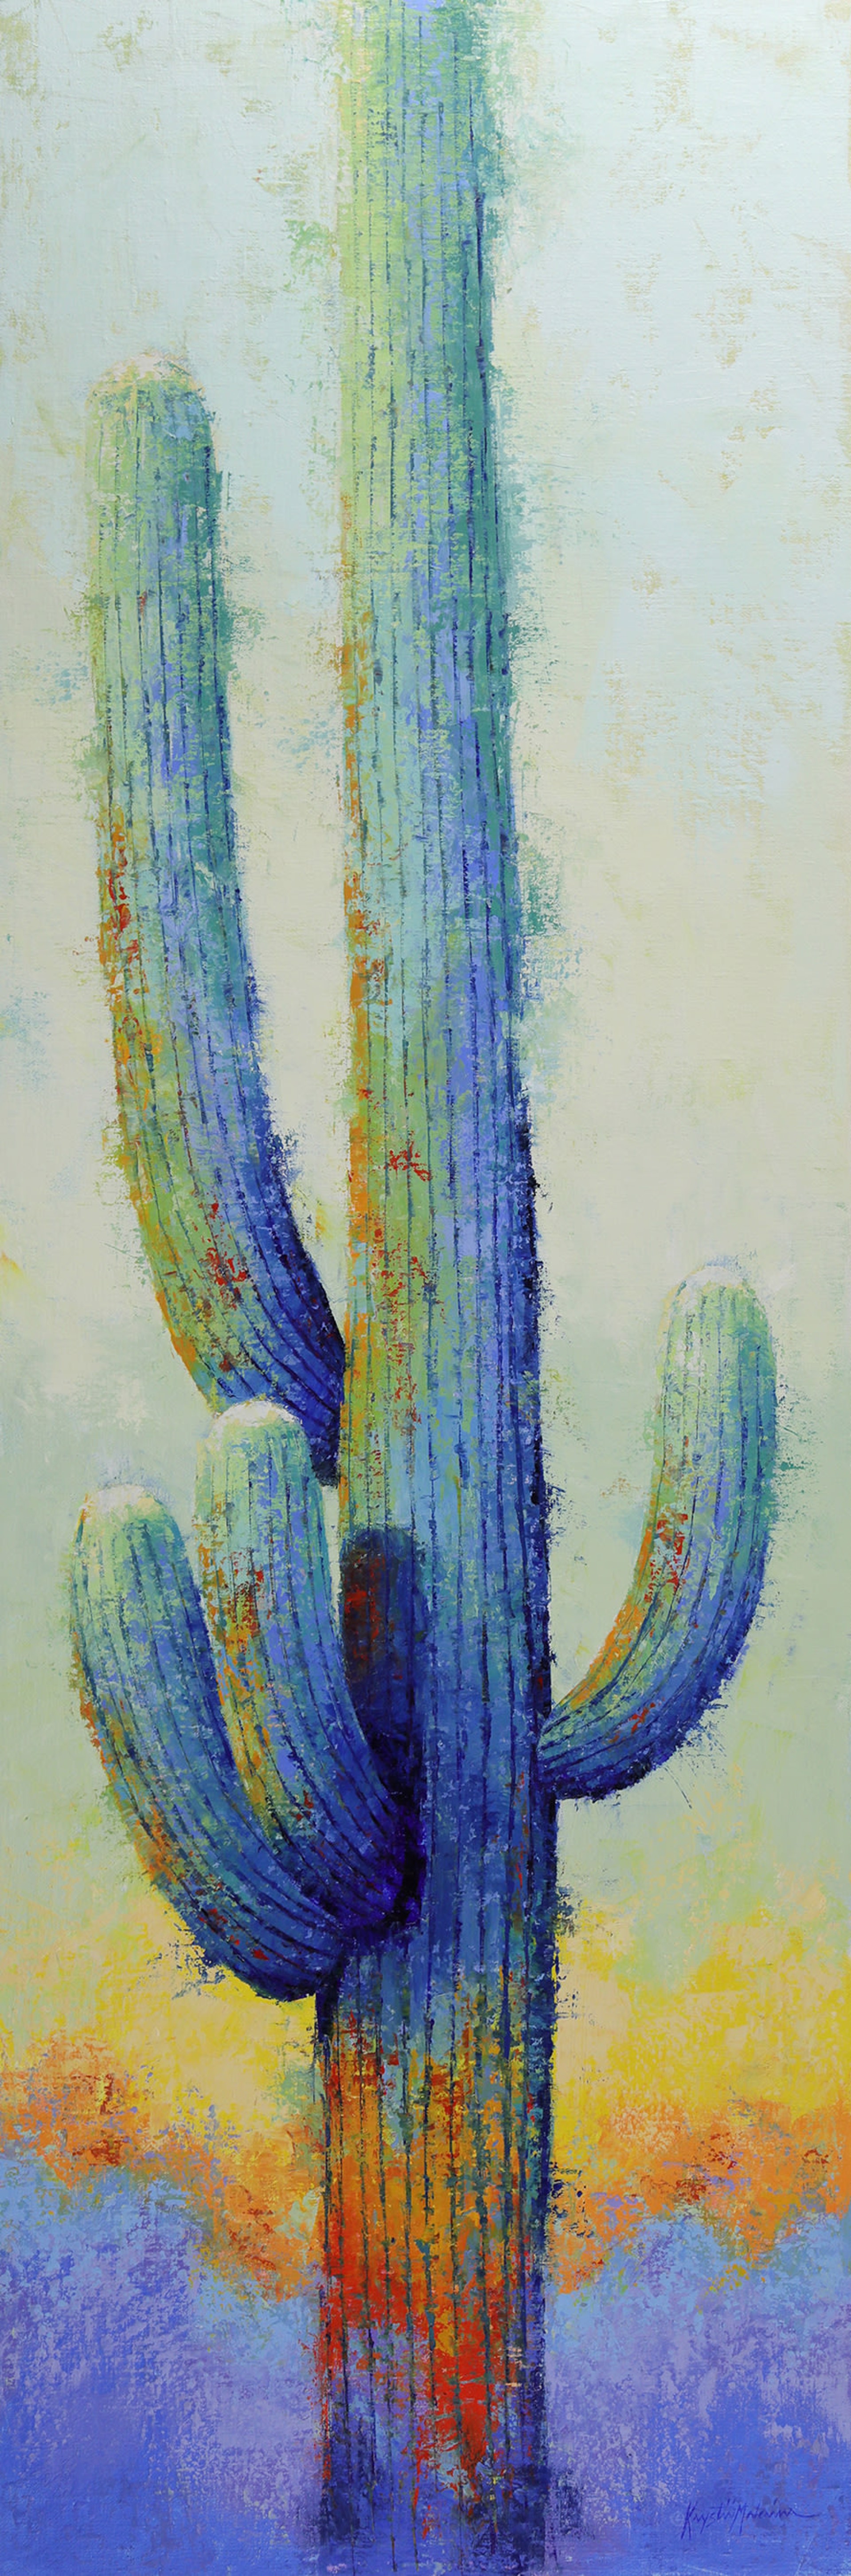 Saguaro P1 by Krystii Melaine